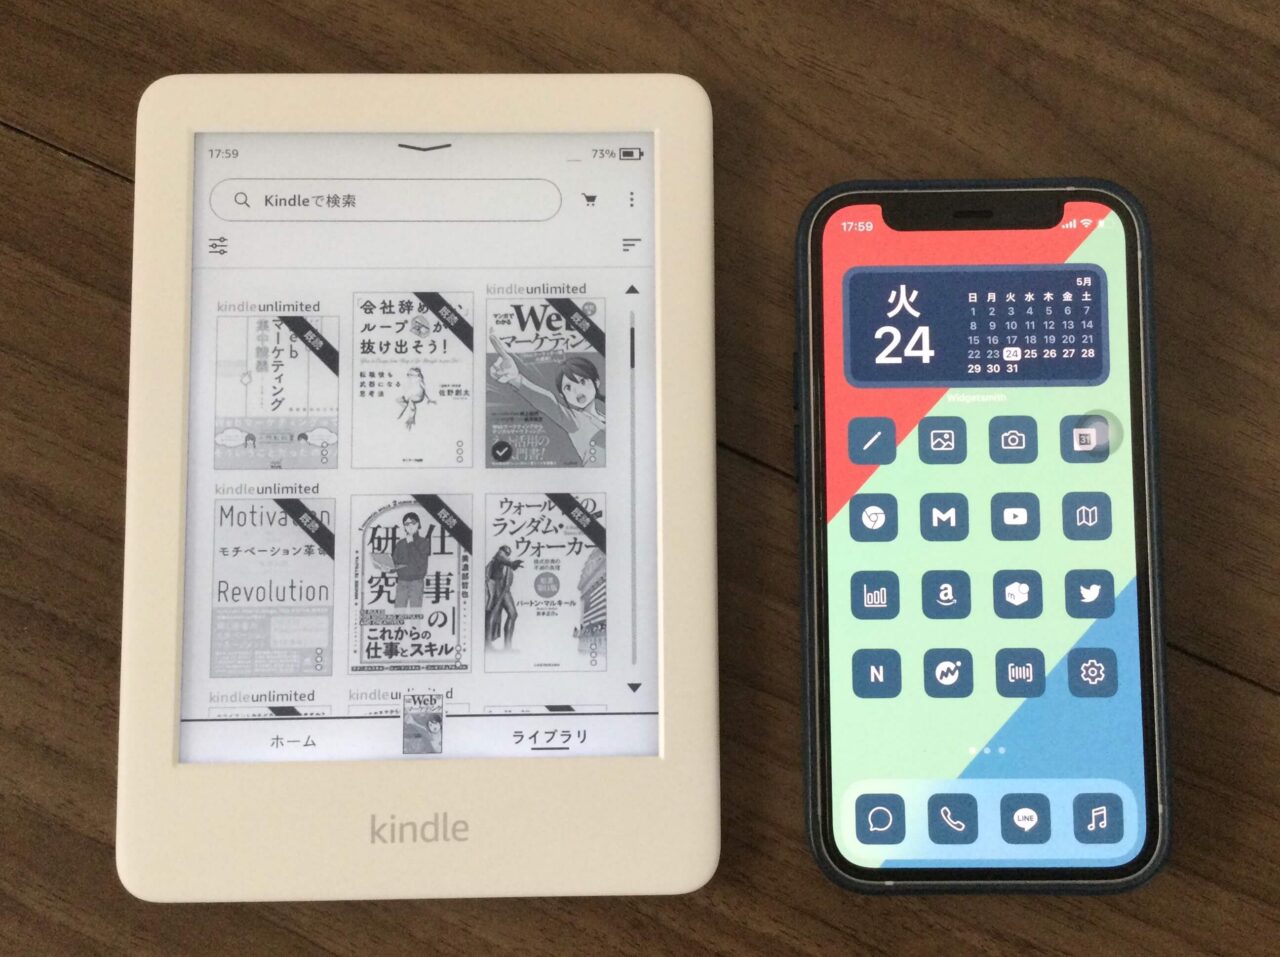 Kindleとiphone12miniのサイズ比較